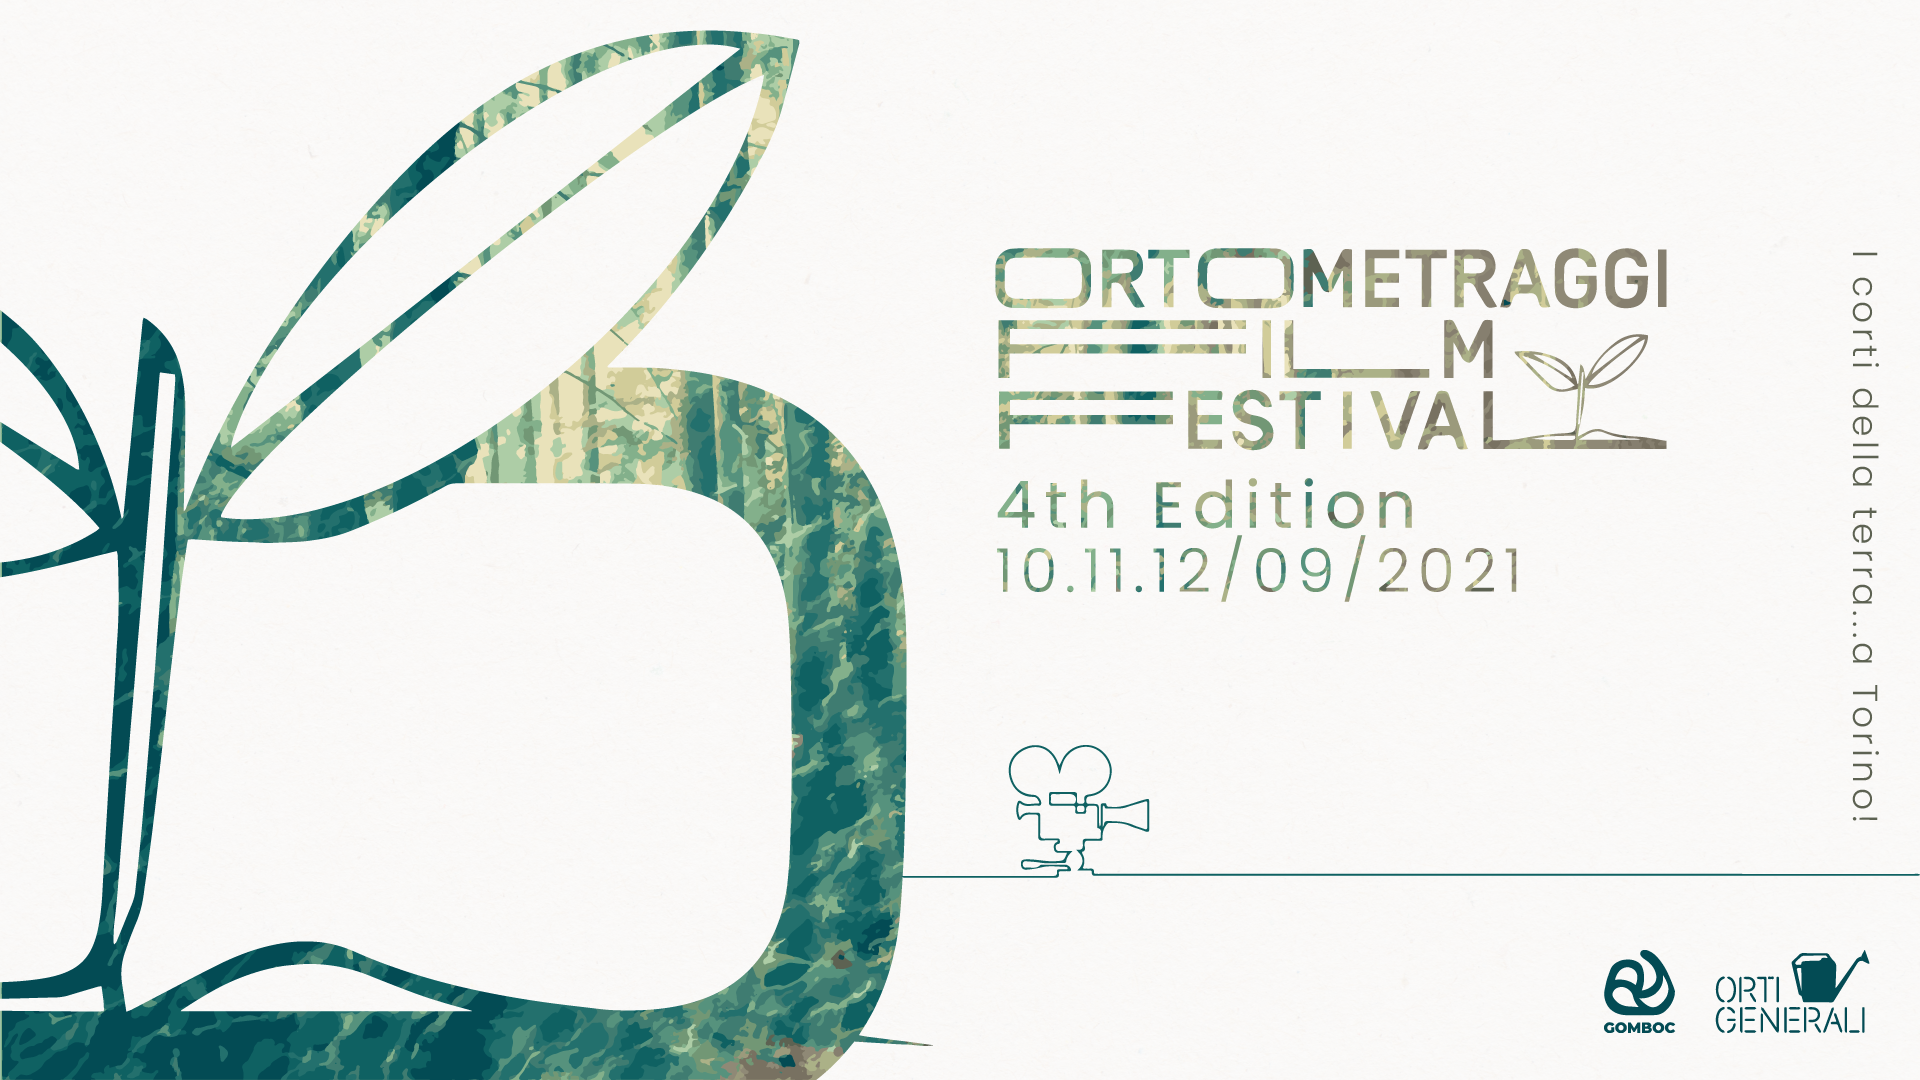 Dal 10 al 12 settembre a Torino il quarto ORTOMETRAGGI Film Festival